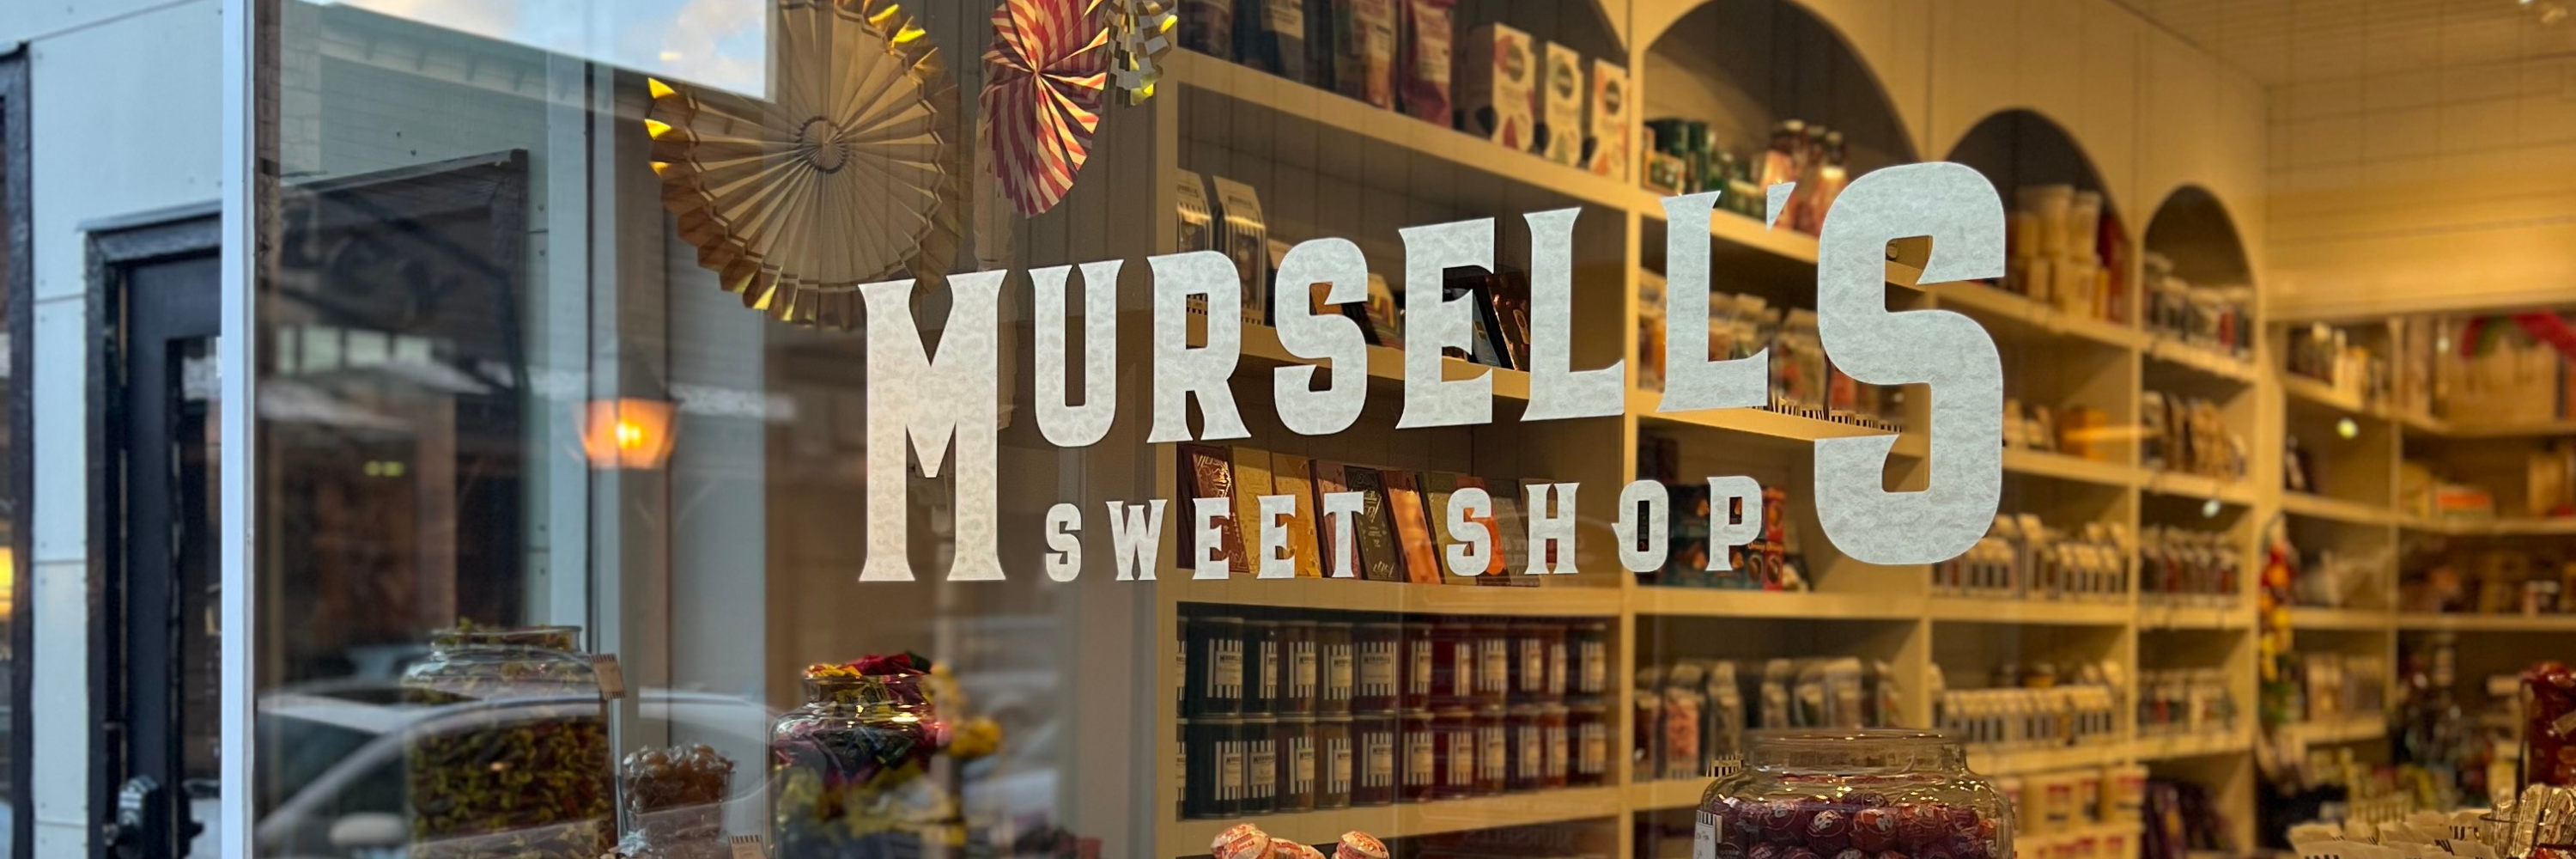 Mursell's Sweet Shop